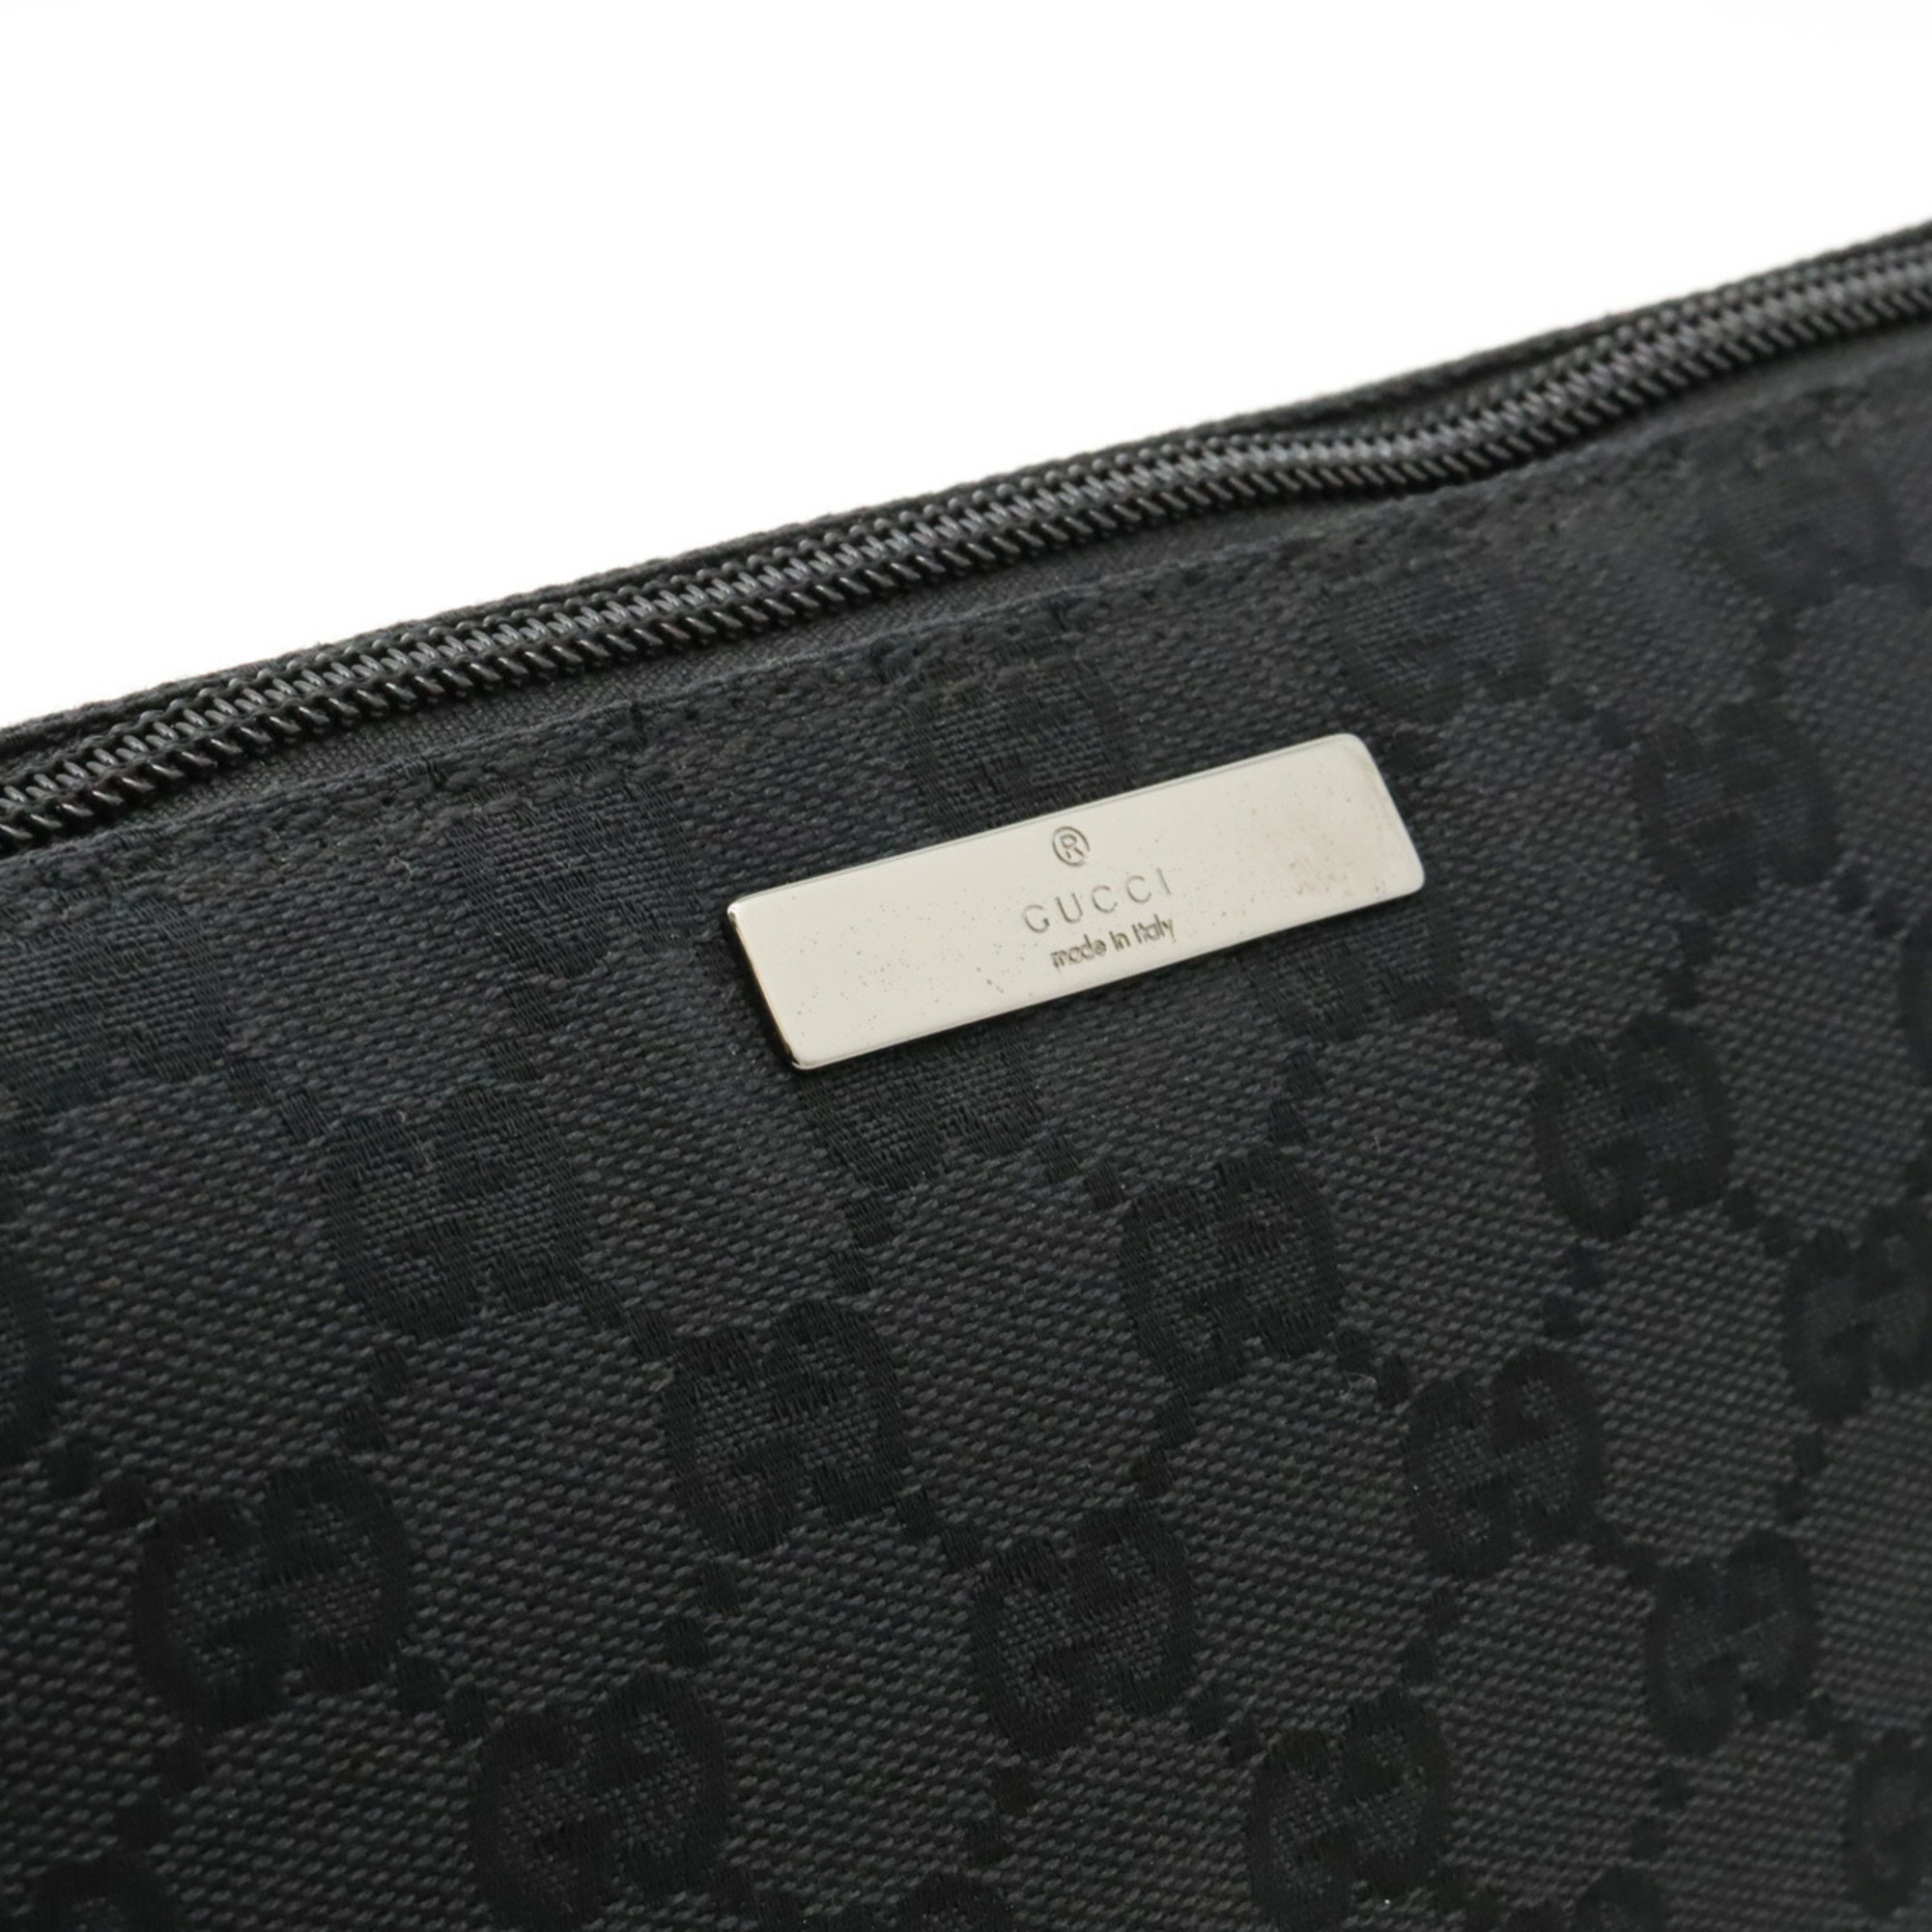 GUCCI Gucci GG Canvas Pouch Subbag Handbag Black 07198